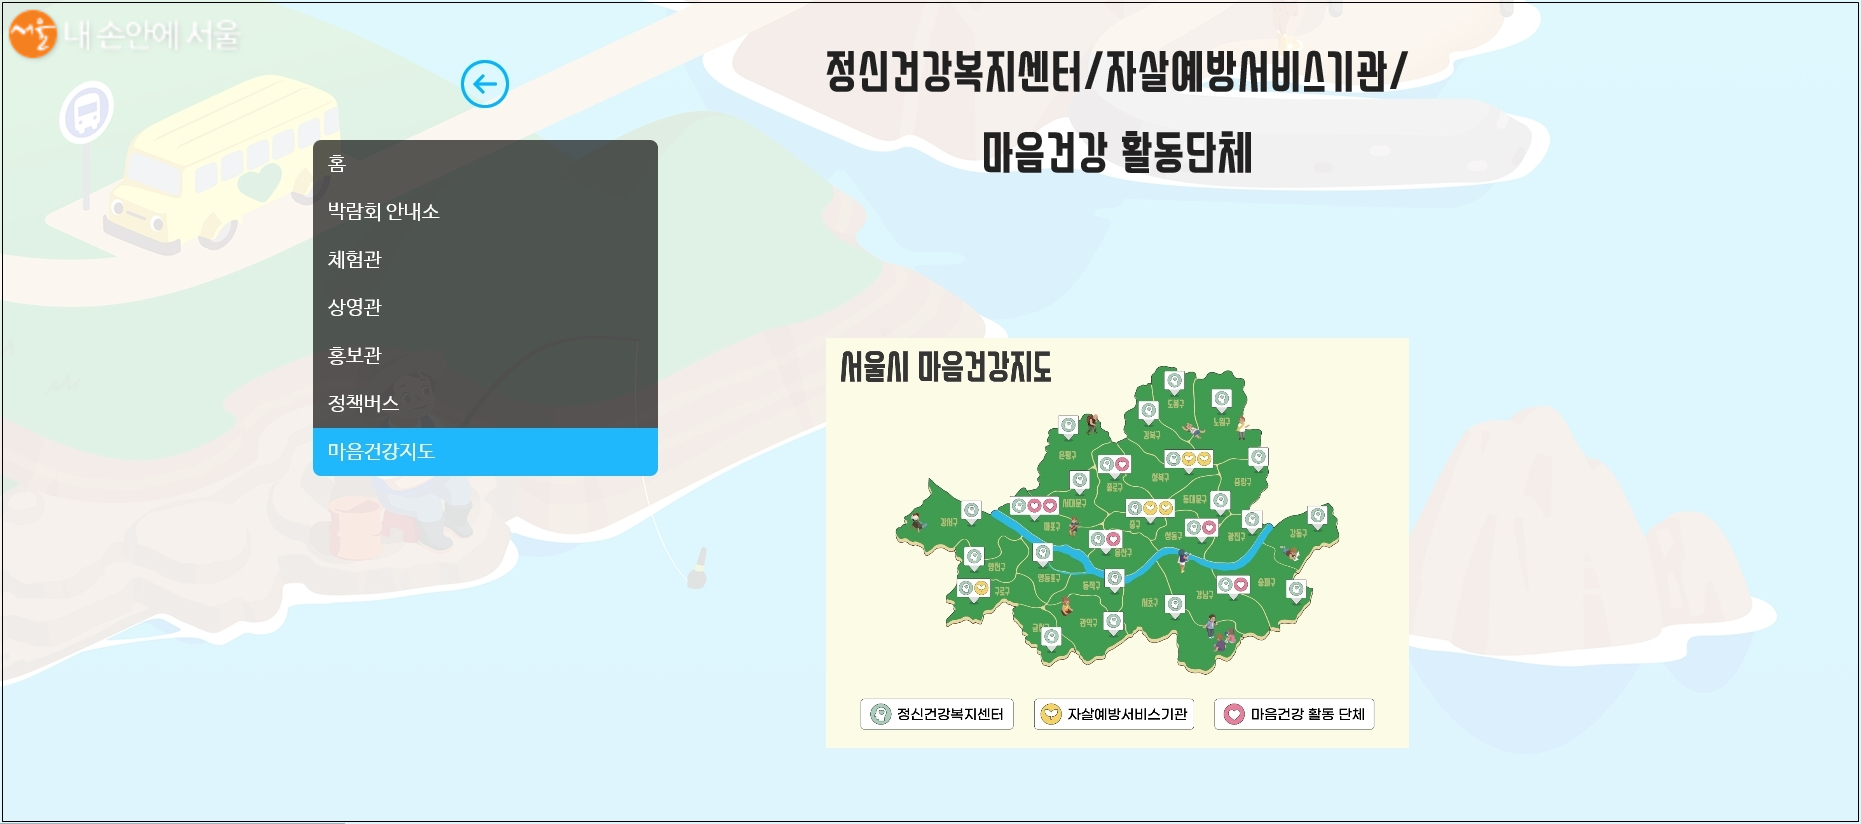 실제로 도움받을 수 있는 마음건강 지도 ⓒ2020 서울시 청년 마음건강 랜선박람회